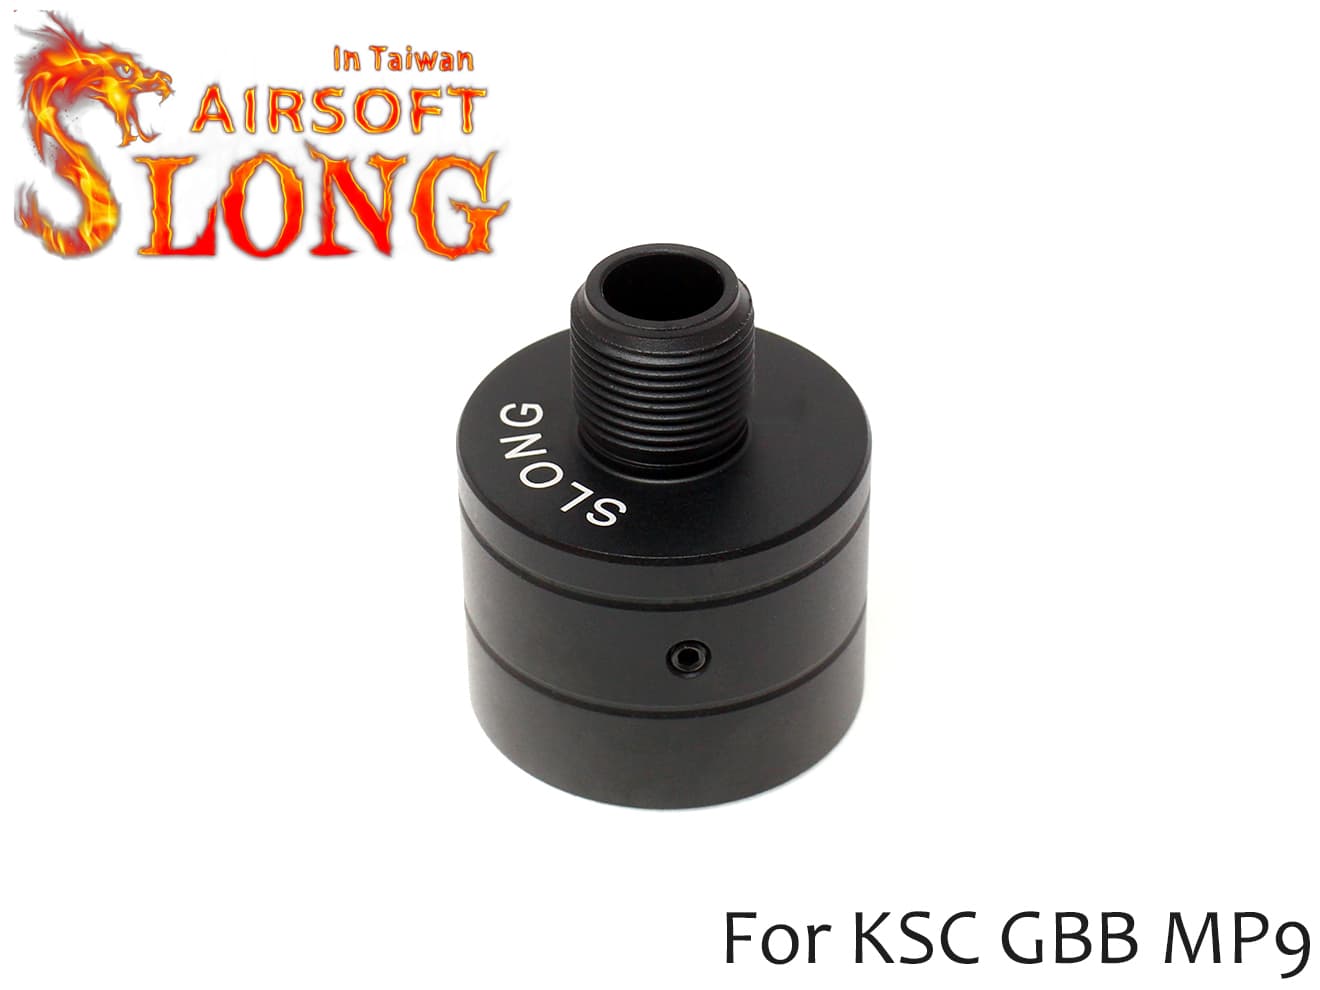 SLONG AIRSOFT MP9 サイレンサーアタッチメント 14mm逆ネジ [カラー：ブラック / オレンジ / ゴールド]